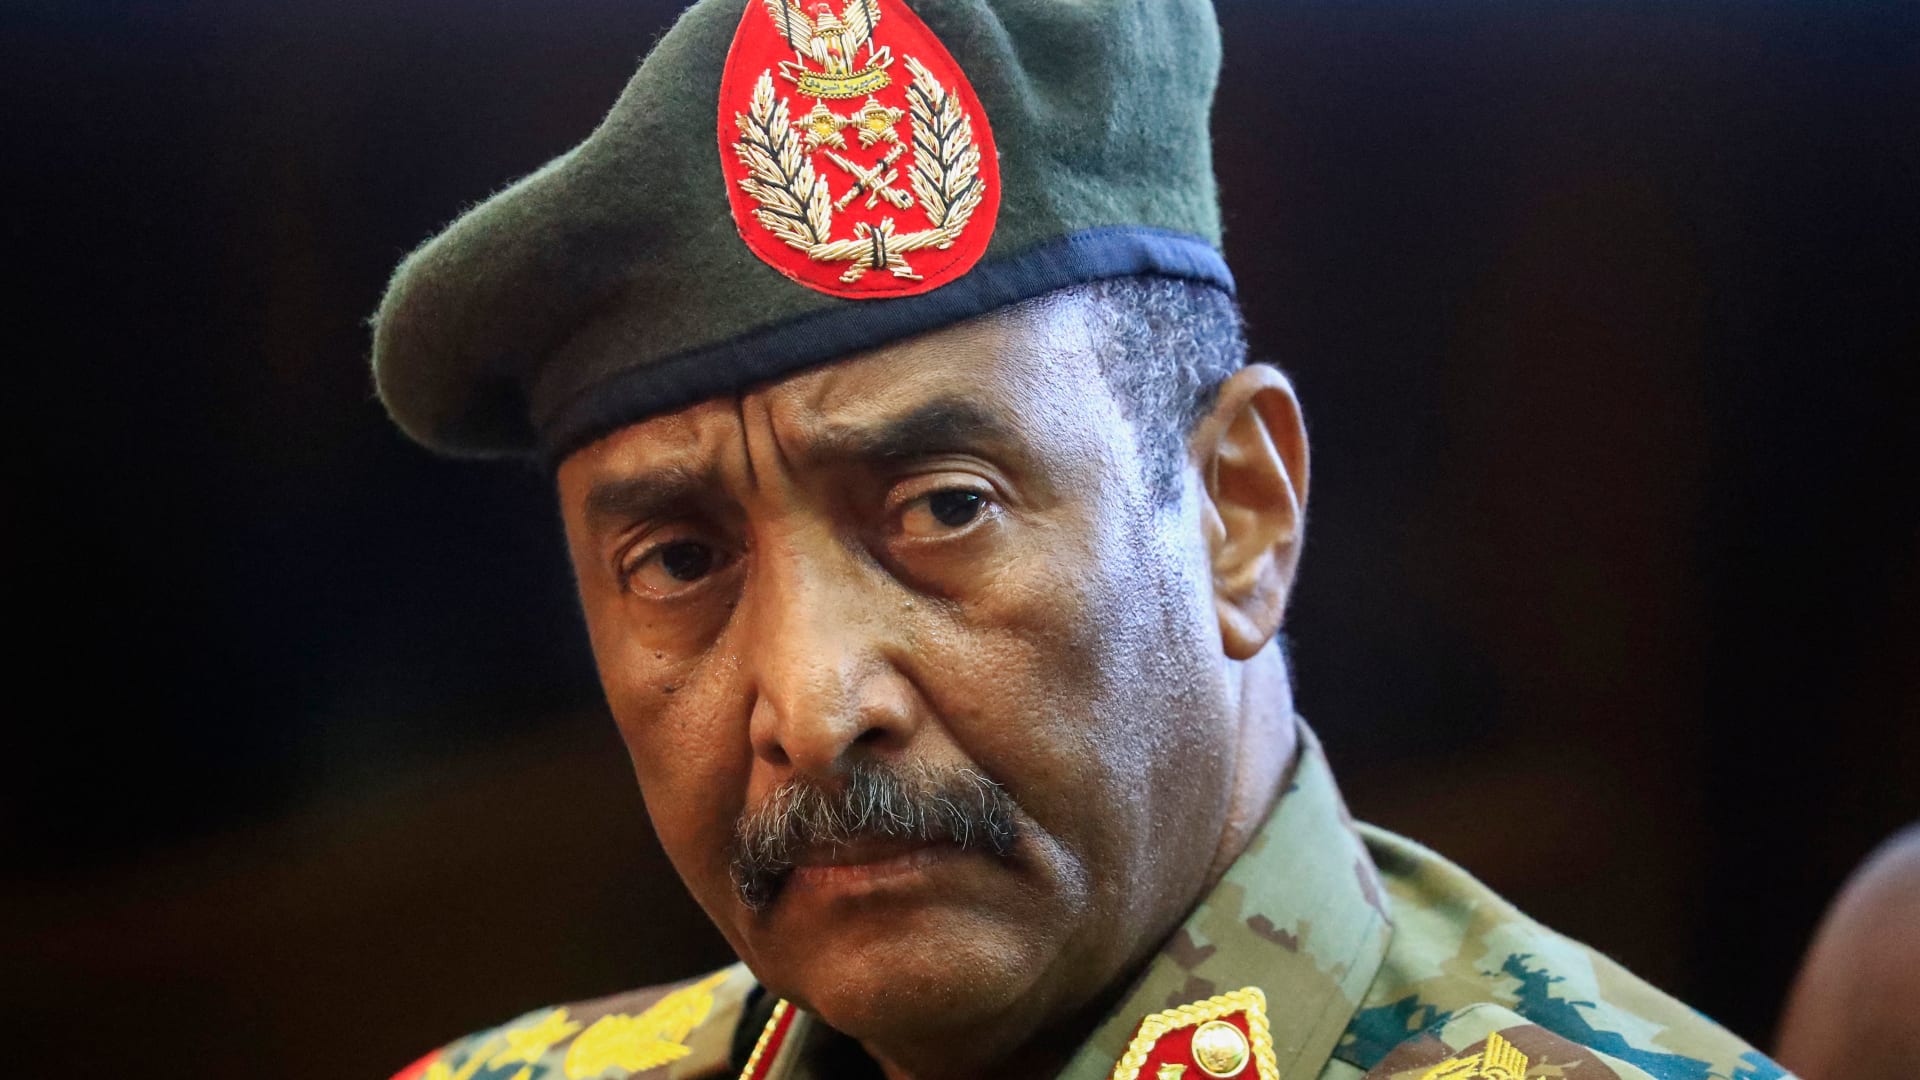 "استهدفت أسلحة وذخيرة لقوات الدعم السريع".. غارات للجيش السوداني تخلف أضرارا بمستشفى في الخرطوم